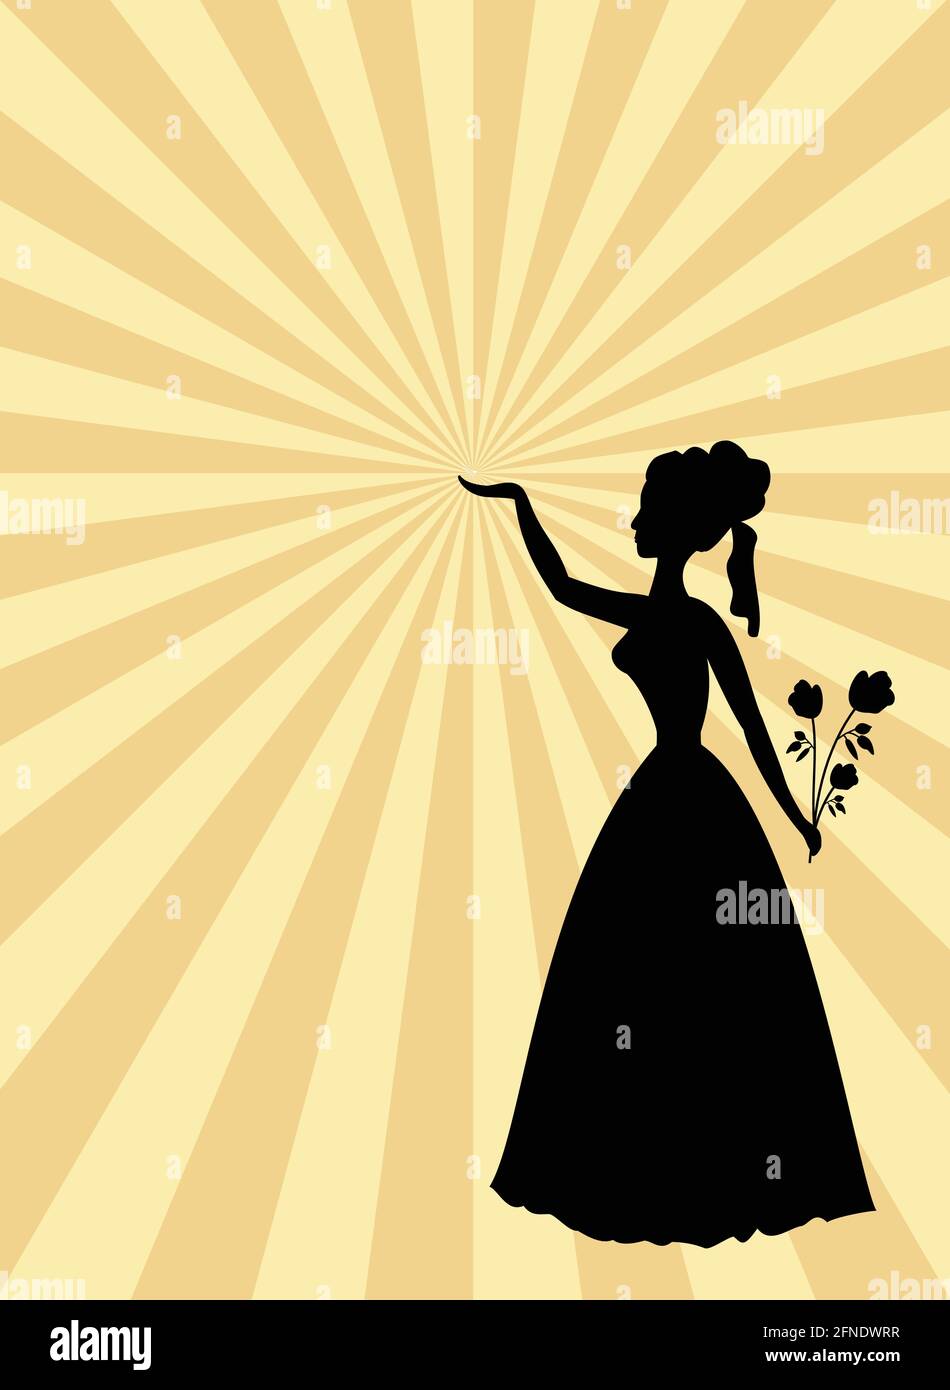 Frau schwarze Silhouette auf beige und Gold Strahlen gemusterten Hintergrund. Dame mit Rosenstrauß und erhobener Hand. Vorlage im alten Stil für Party oder Ball i Stock Vektor